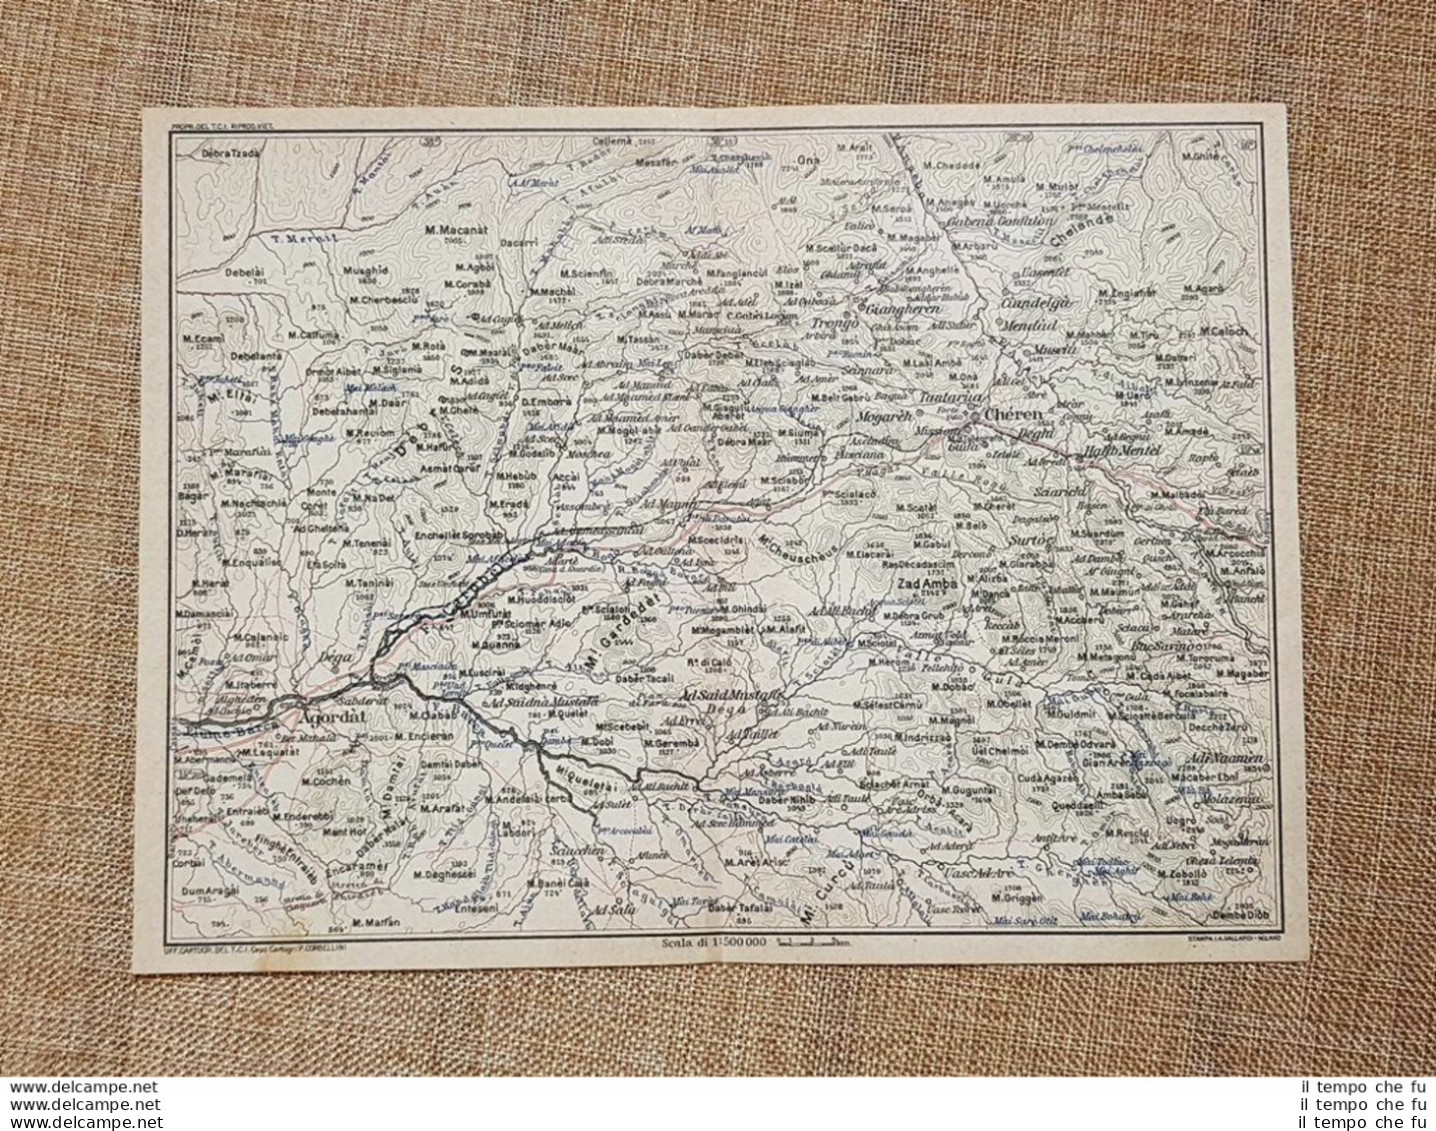 Carta Cartina Del 1929 Agordat O Curdèt Chèren Zad Ambà Ciandelgà Eritrea T.C.I. - Geographical Maps